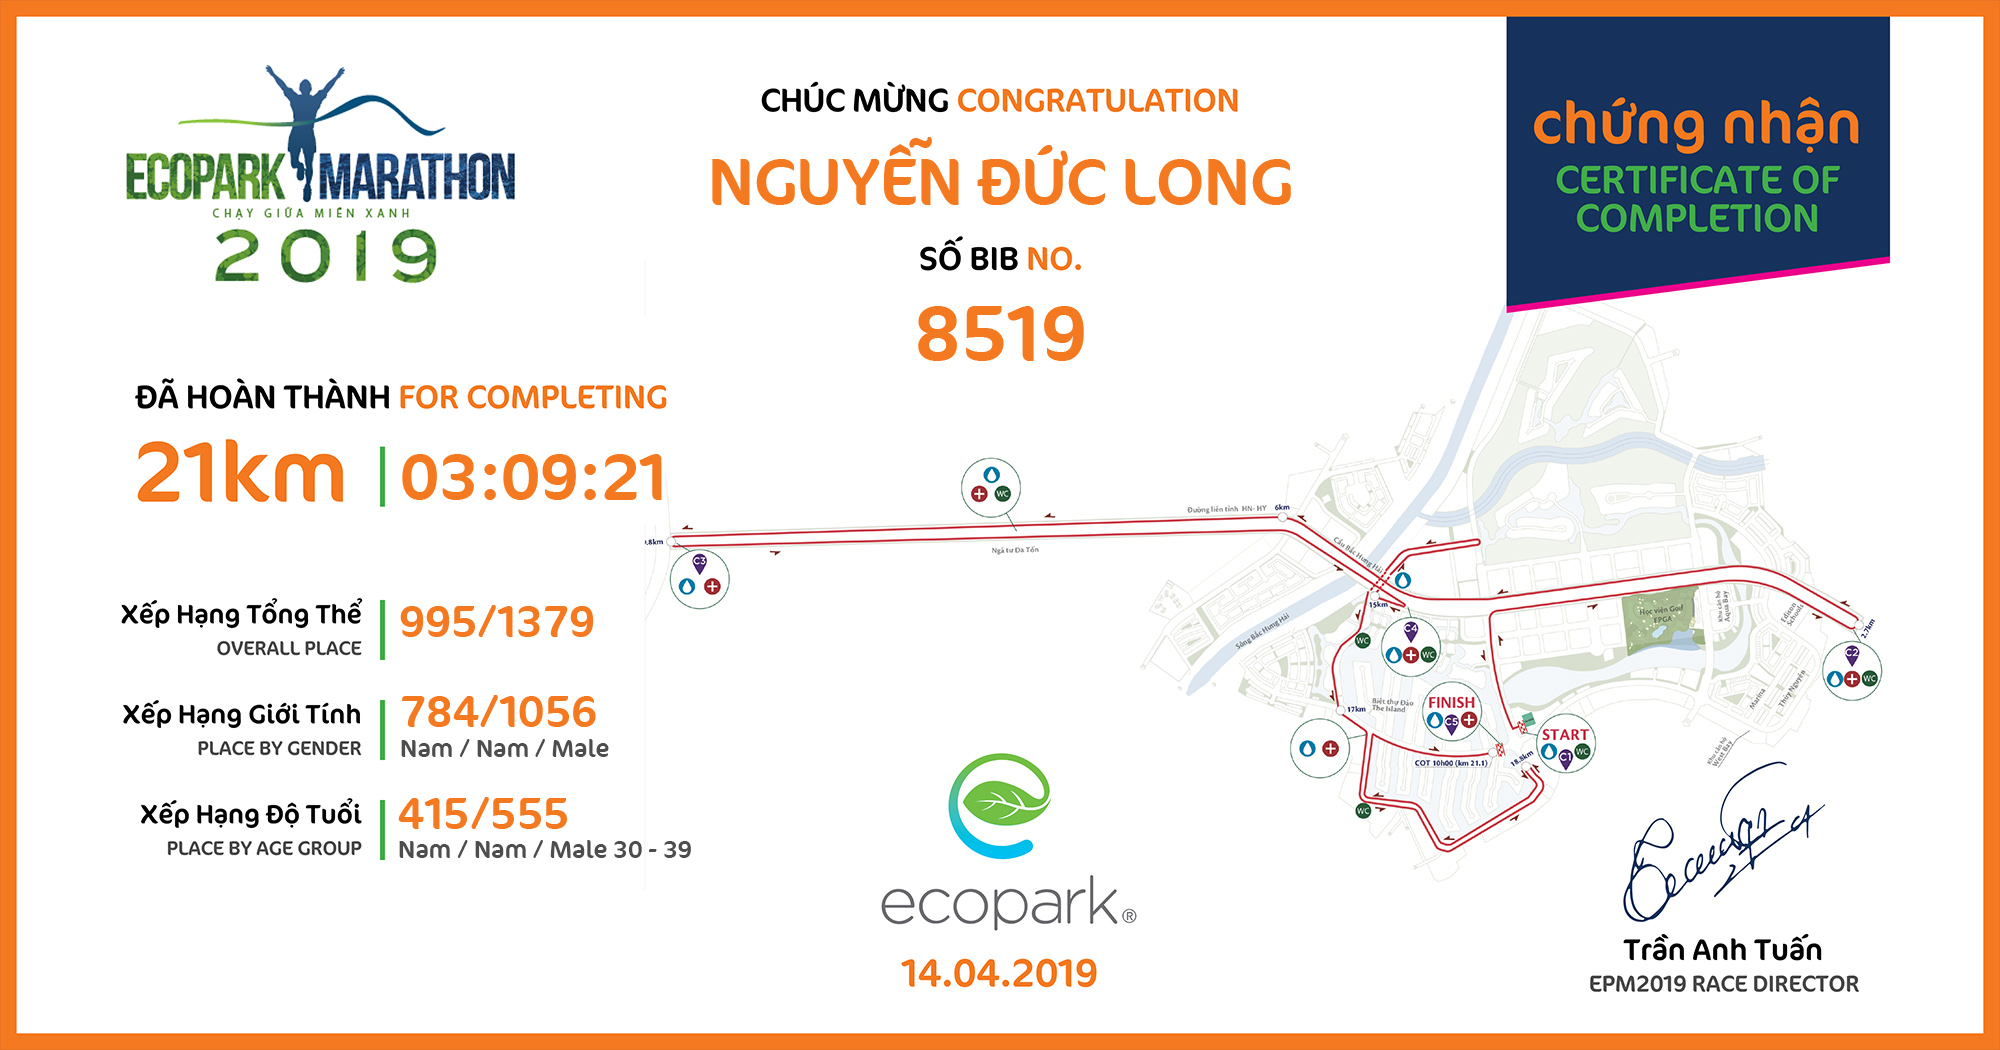 8519 - Nguyễn Đức Long